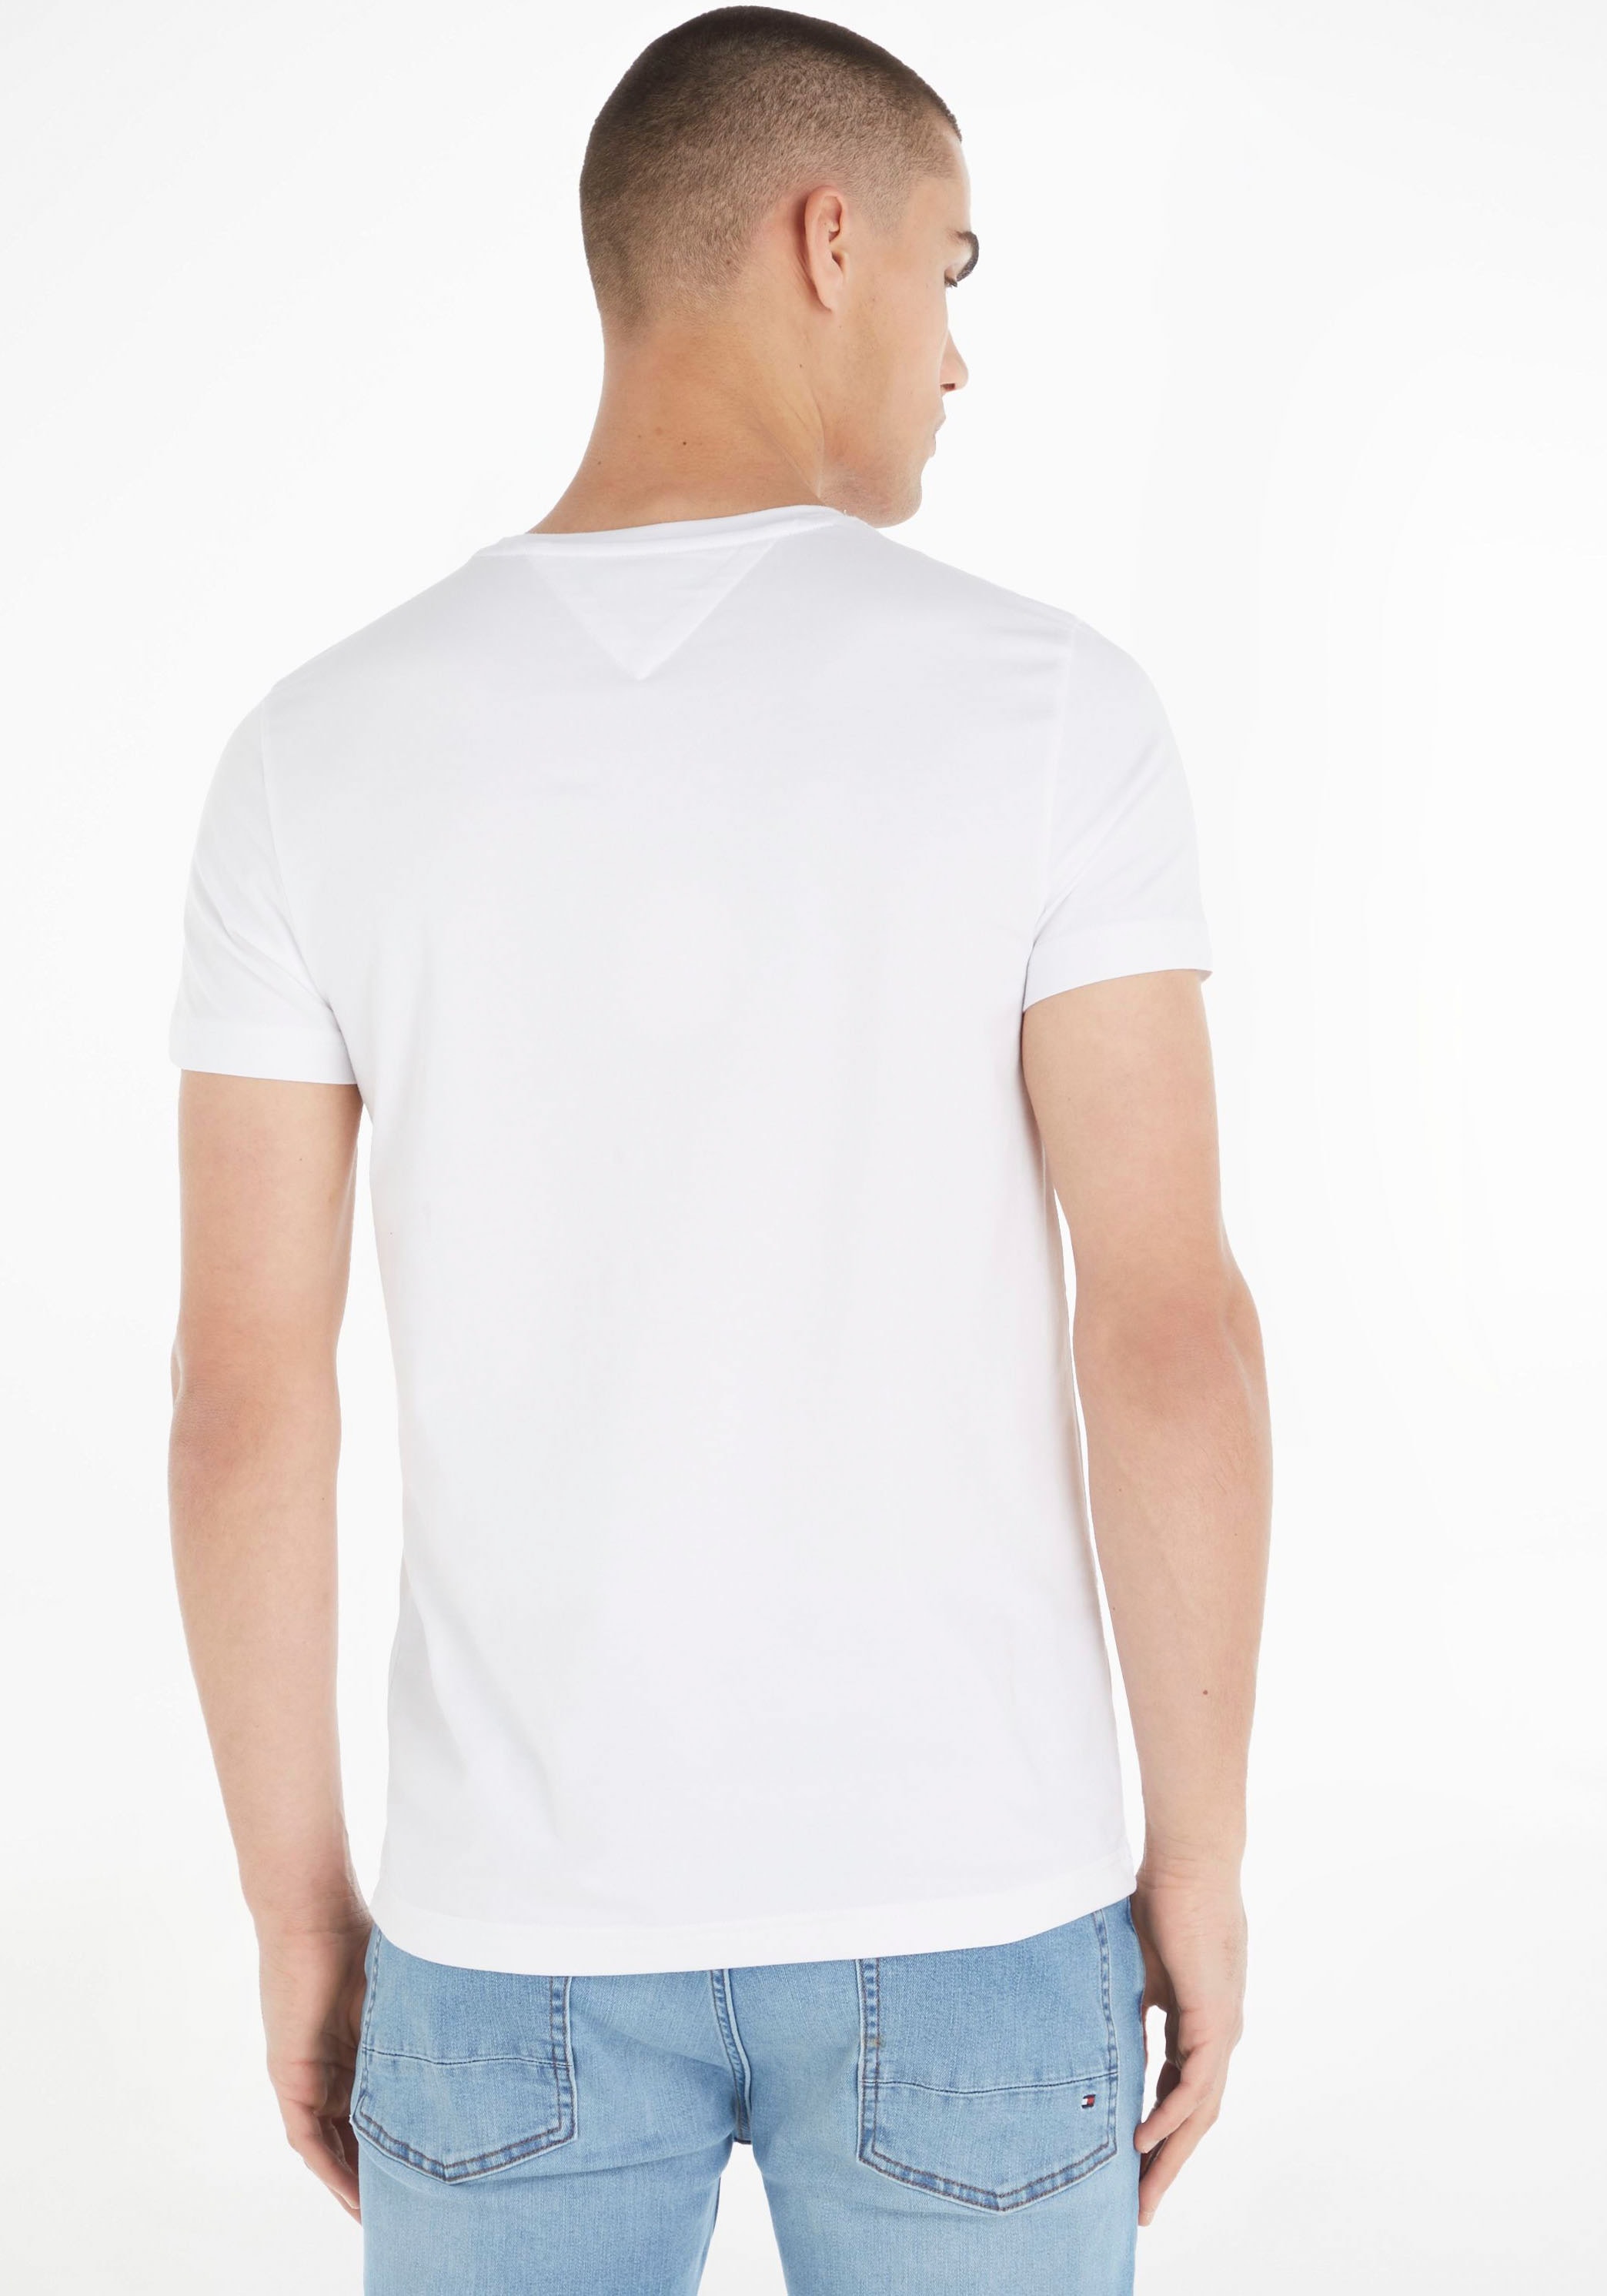 - ohne ➤ Shirts versandkostenfrei kaufen Mindestbestellwert